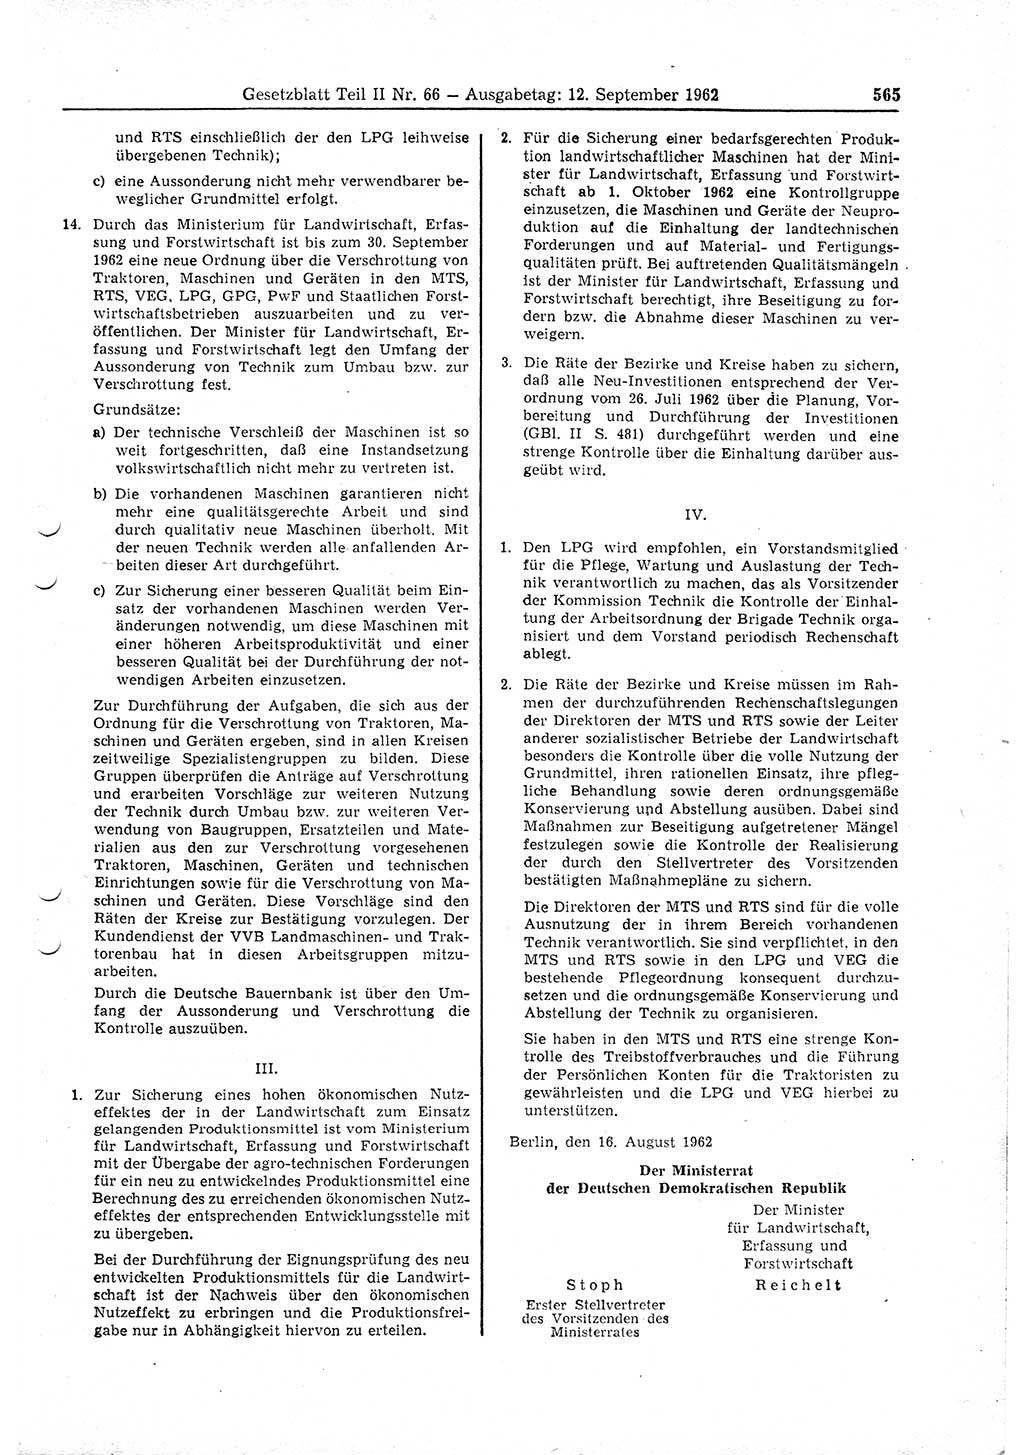 Gesetzblatt (GBl.) der Deutschen Demokratischen Republik (DDR) Teil ⅠⅠ 1962, Seite 565 (GBl. DDR ⅠⅠ 1962, S. 565)